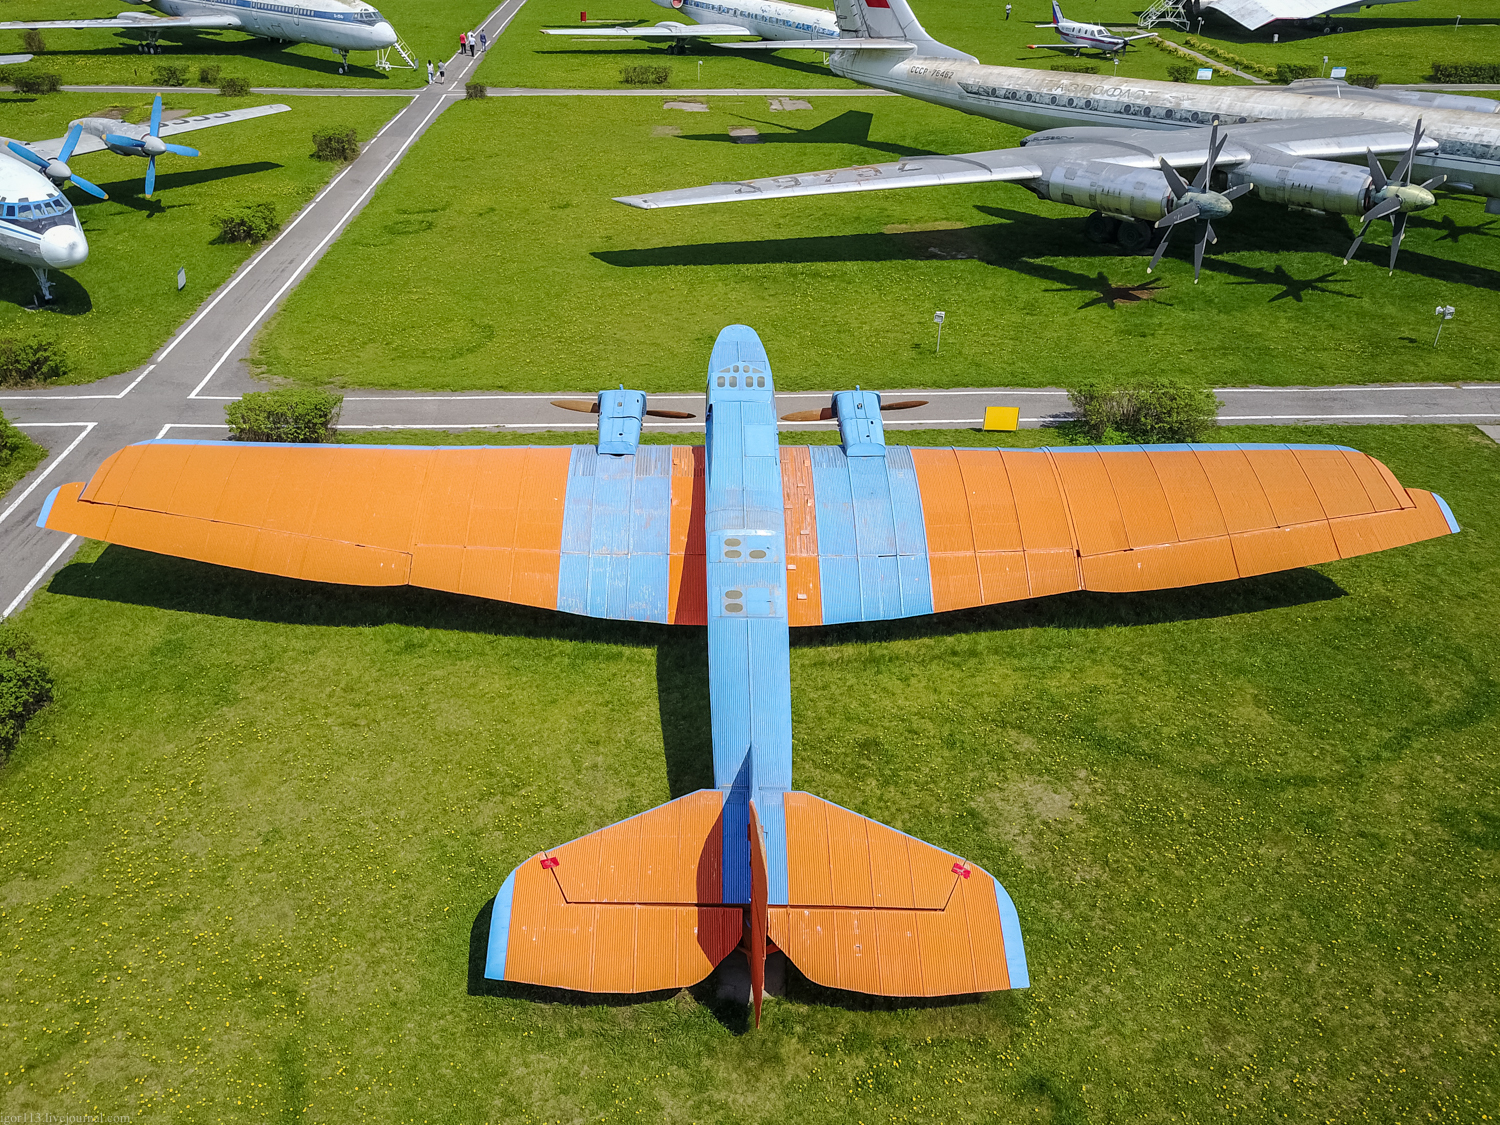 Ульяновский музей Гражданской авиации : цельнометаллический бомбардировщик 